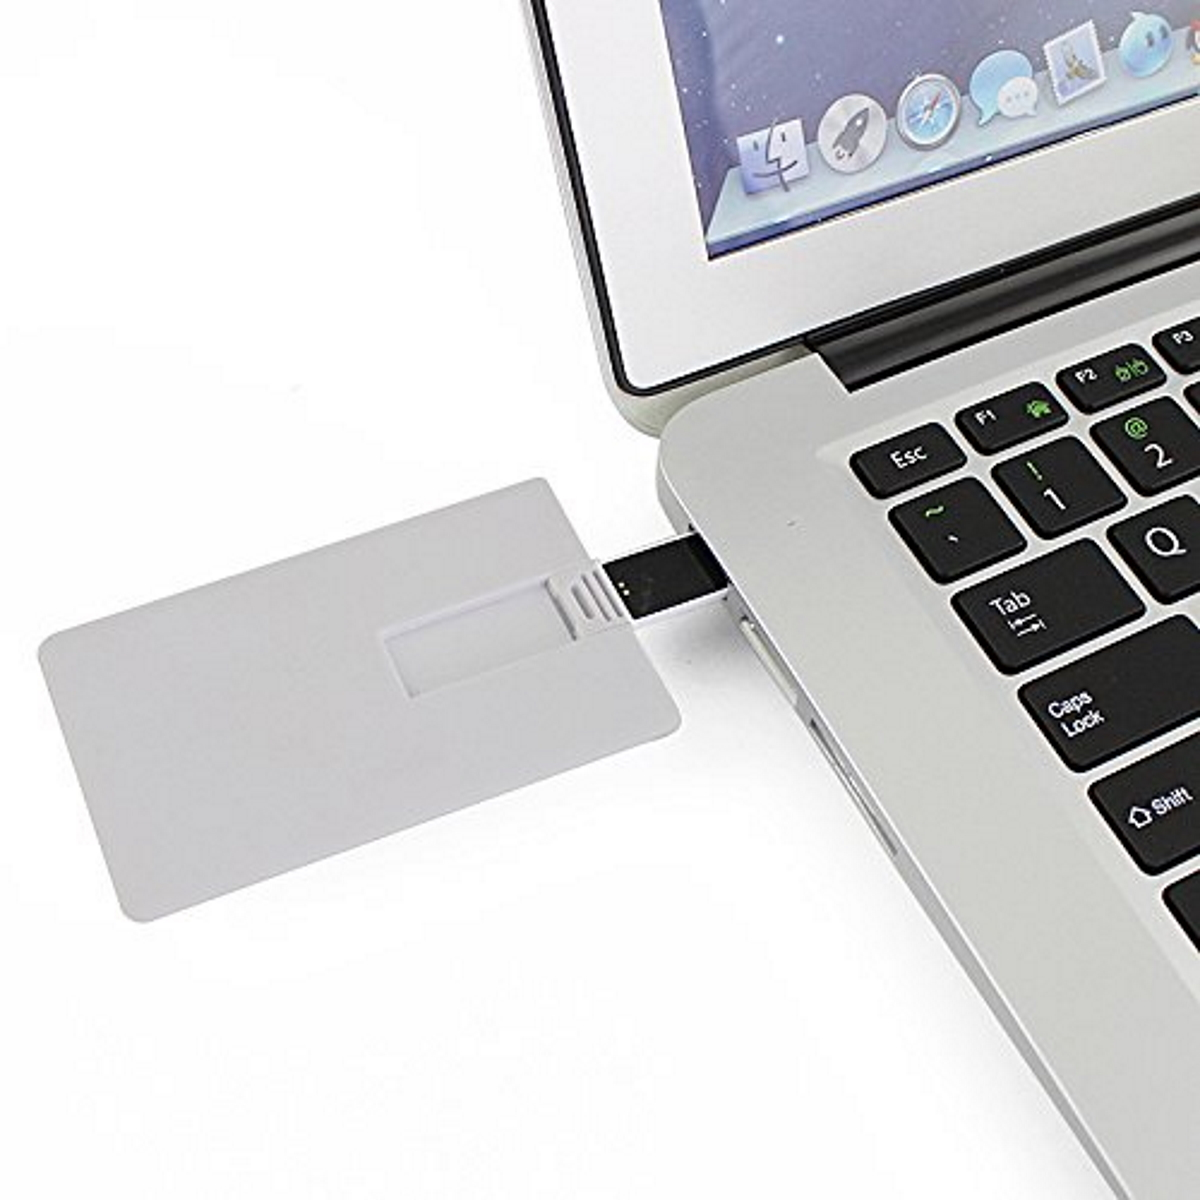 USB GERMANY ® GB) Kreditkarte USB-Stick 2 (Weiss